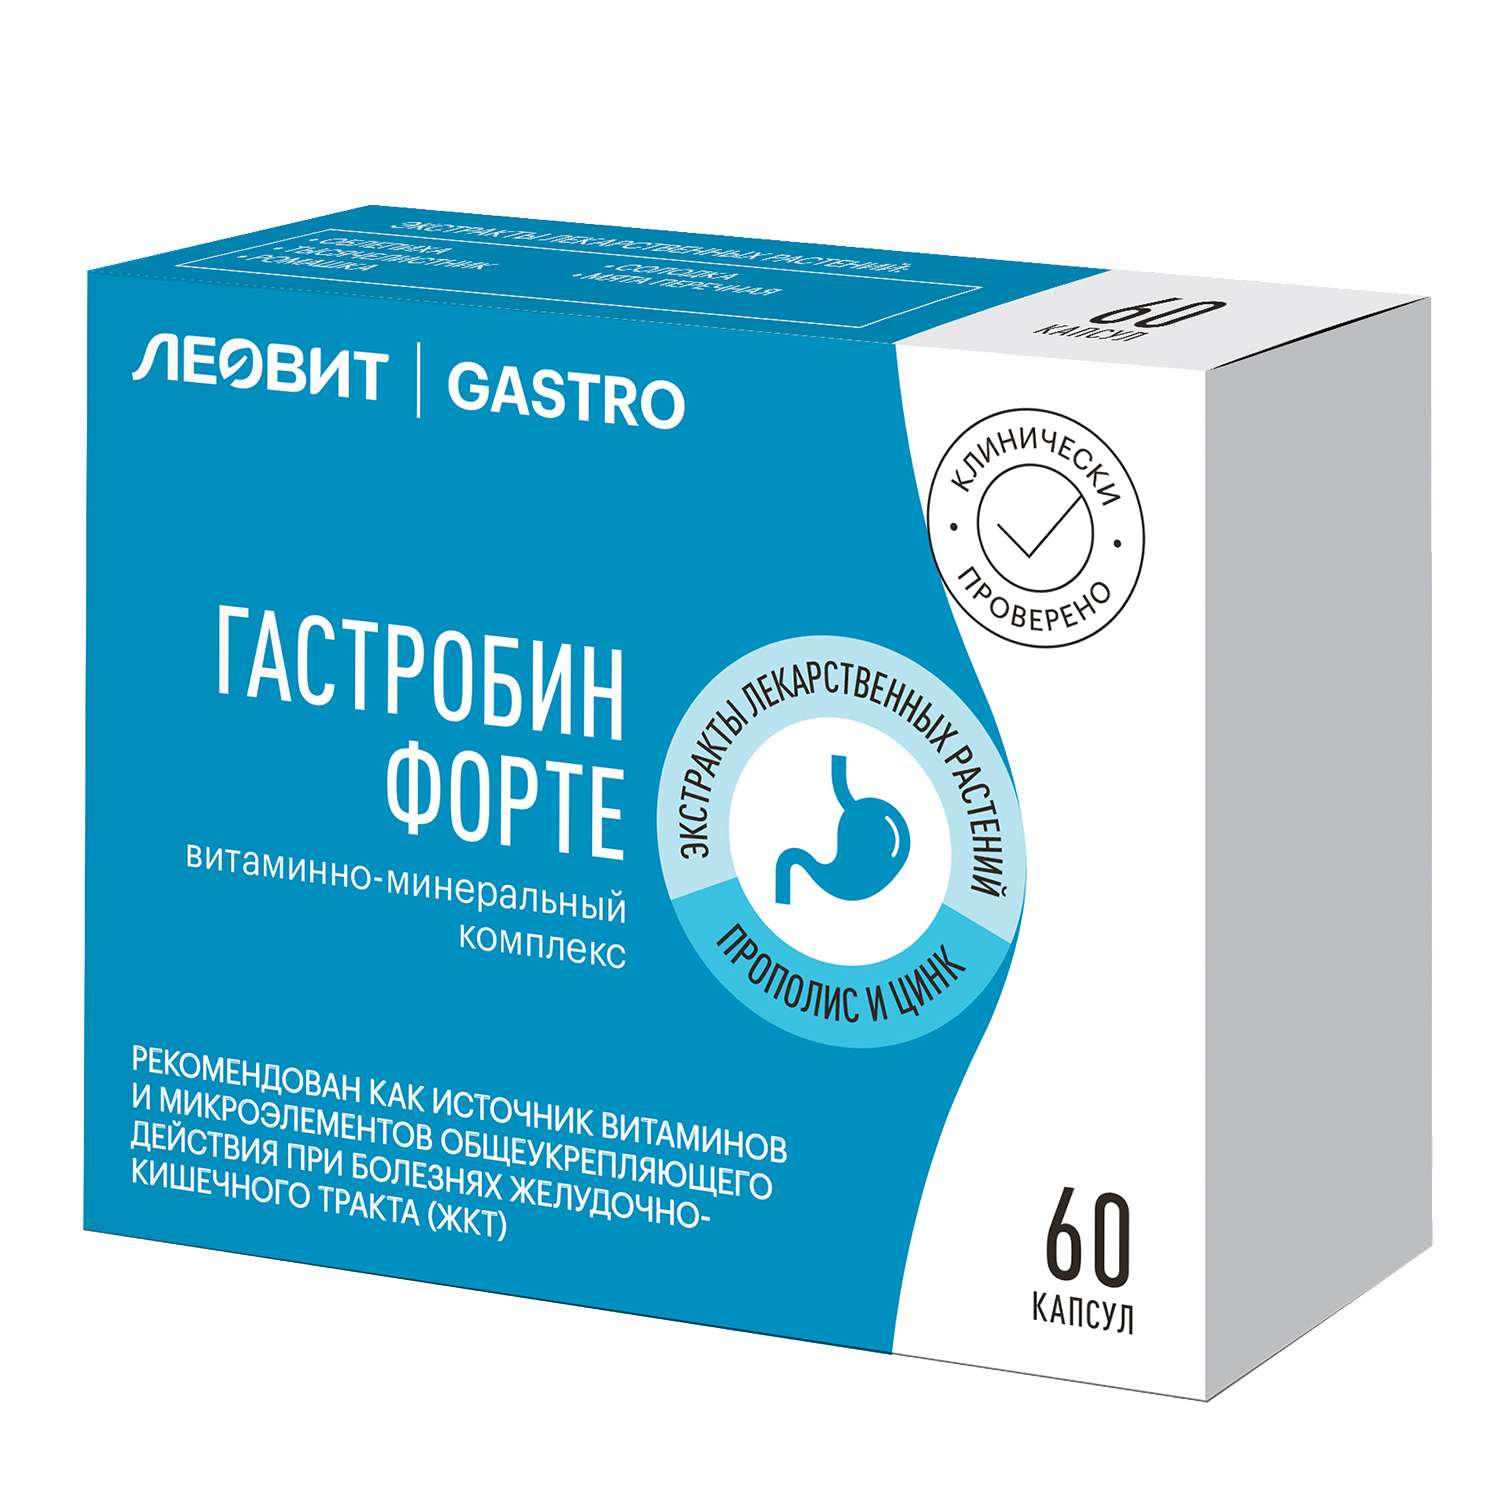 Биологически активная добавка Леовит Gastro для ЖКТ Гастробин форте 30г 60кап - фото 1